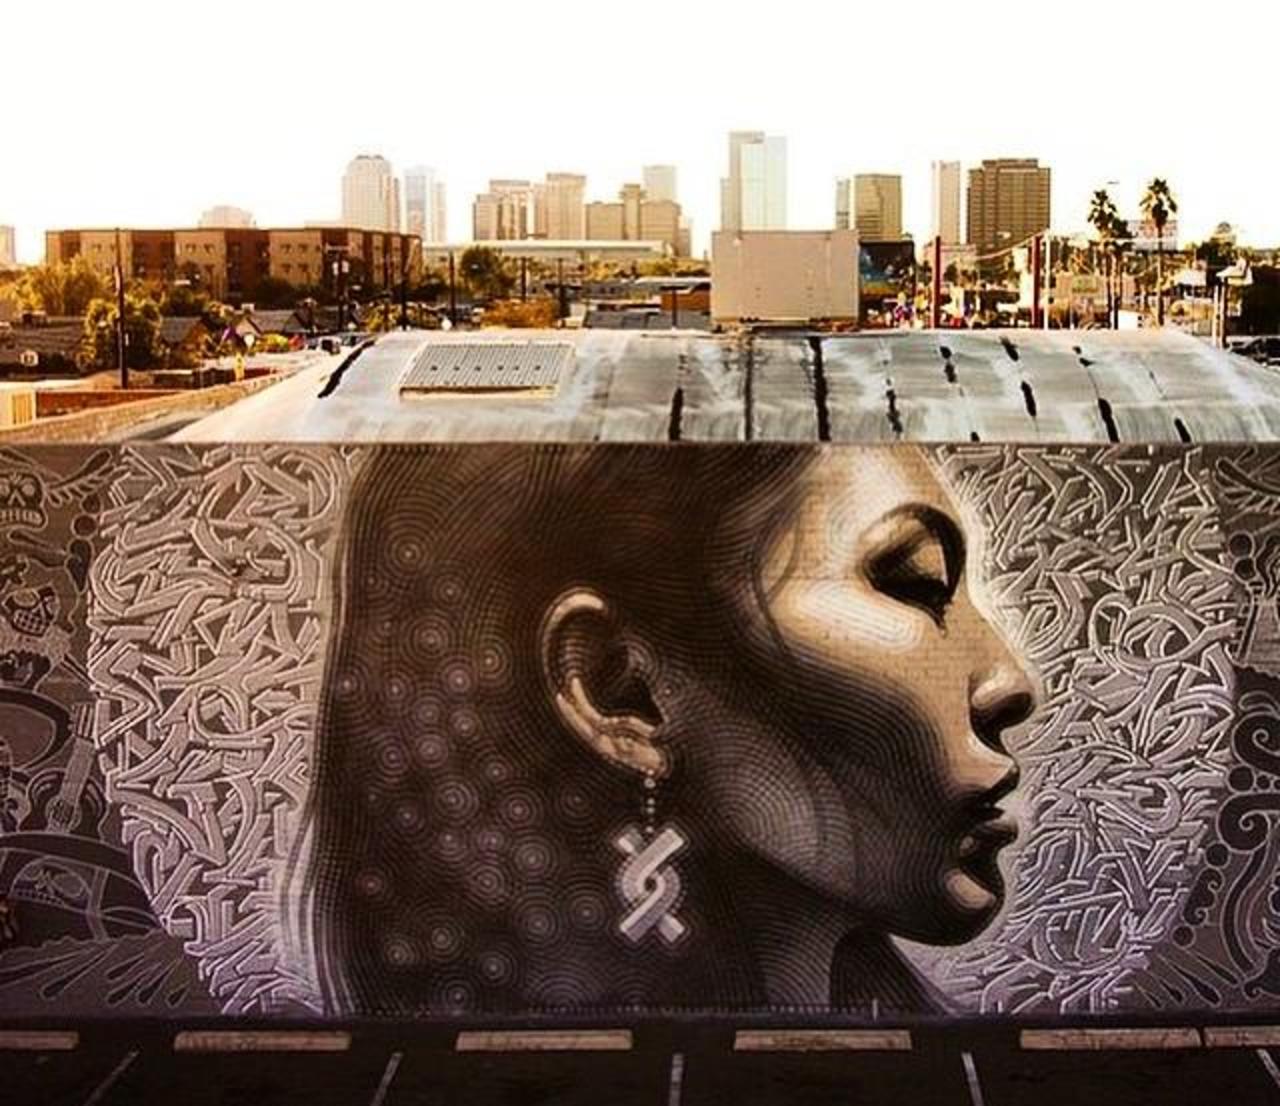 Latest Street Art work by El Mac in Phoenix, Arizona

#art #mural #graffiti #streetart http://t.co/R6NrdjOGdJ